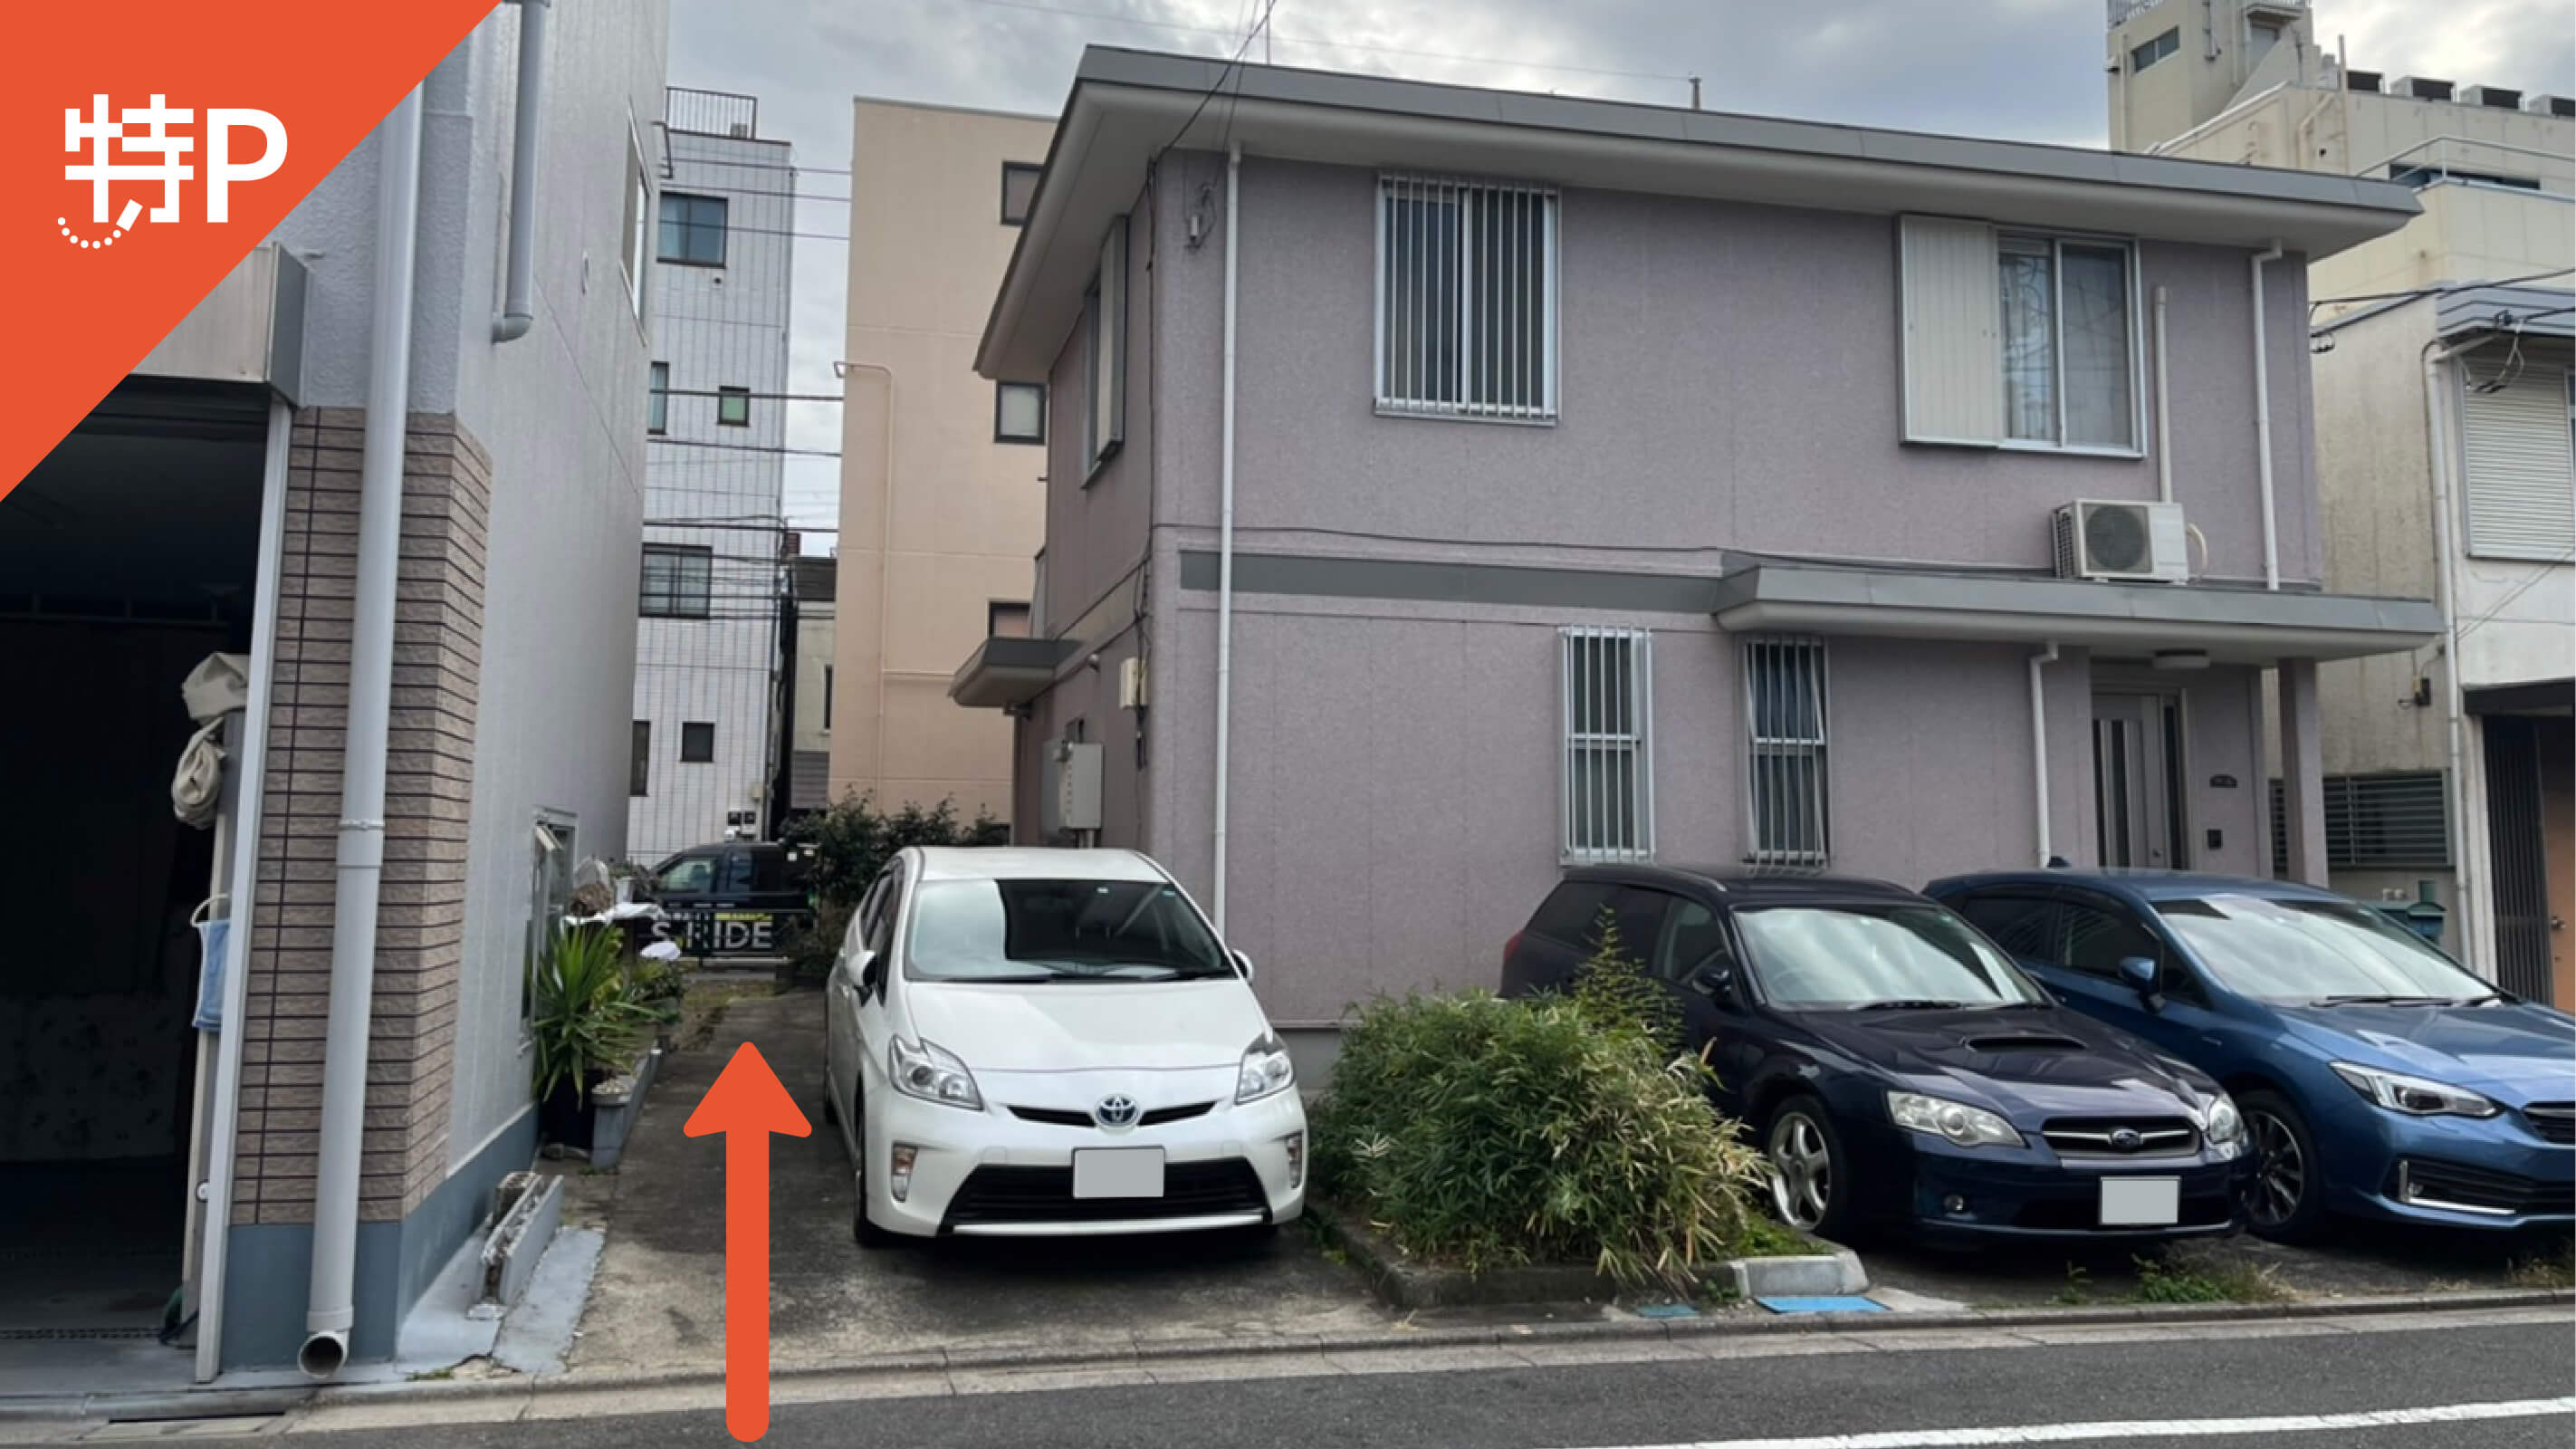 【予約制】特P 《バイク専用》上野桜木2-10-13駐車場の画像1